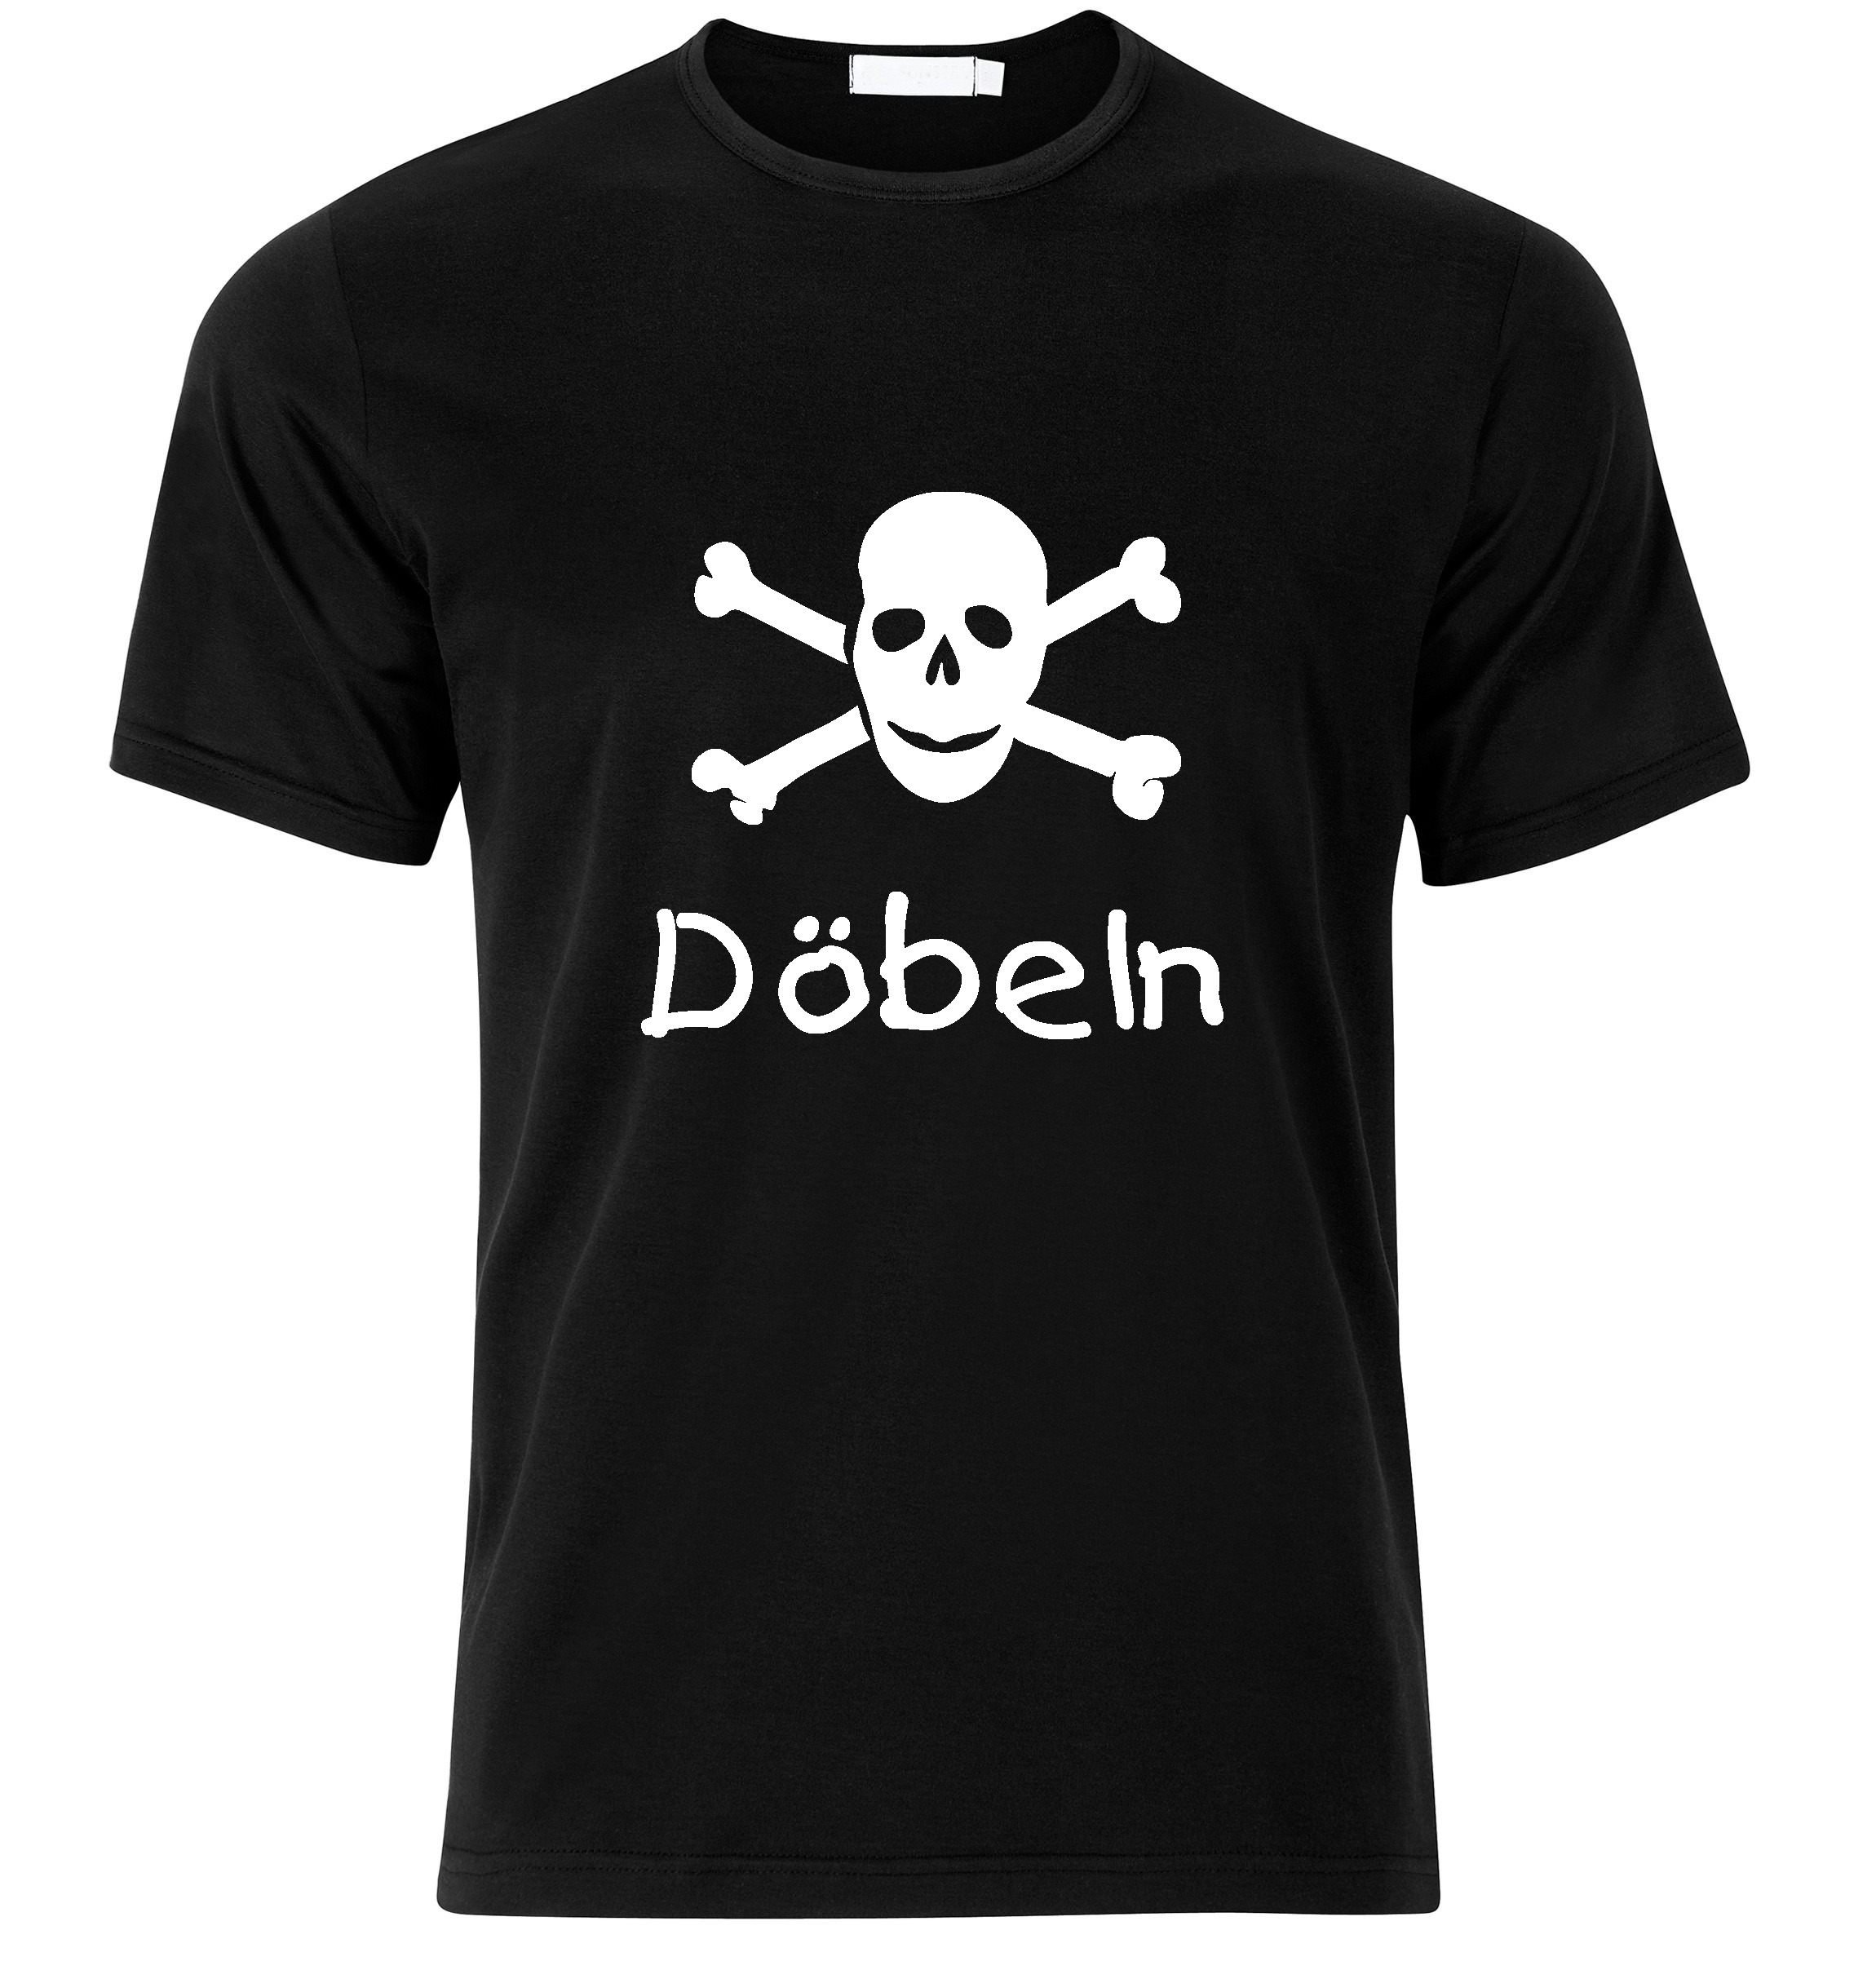 T-Shirt Döbeln Jolly Roger, Totenkopf